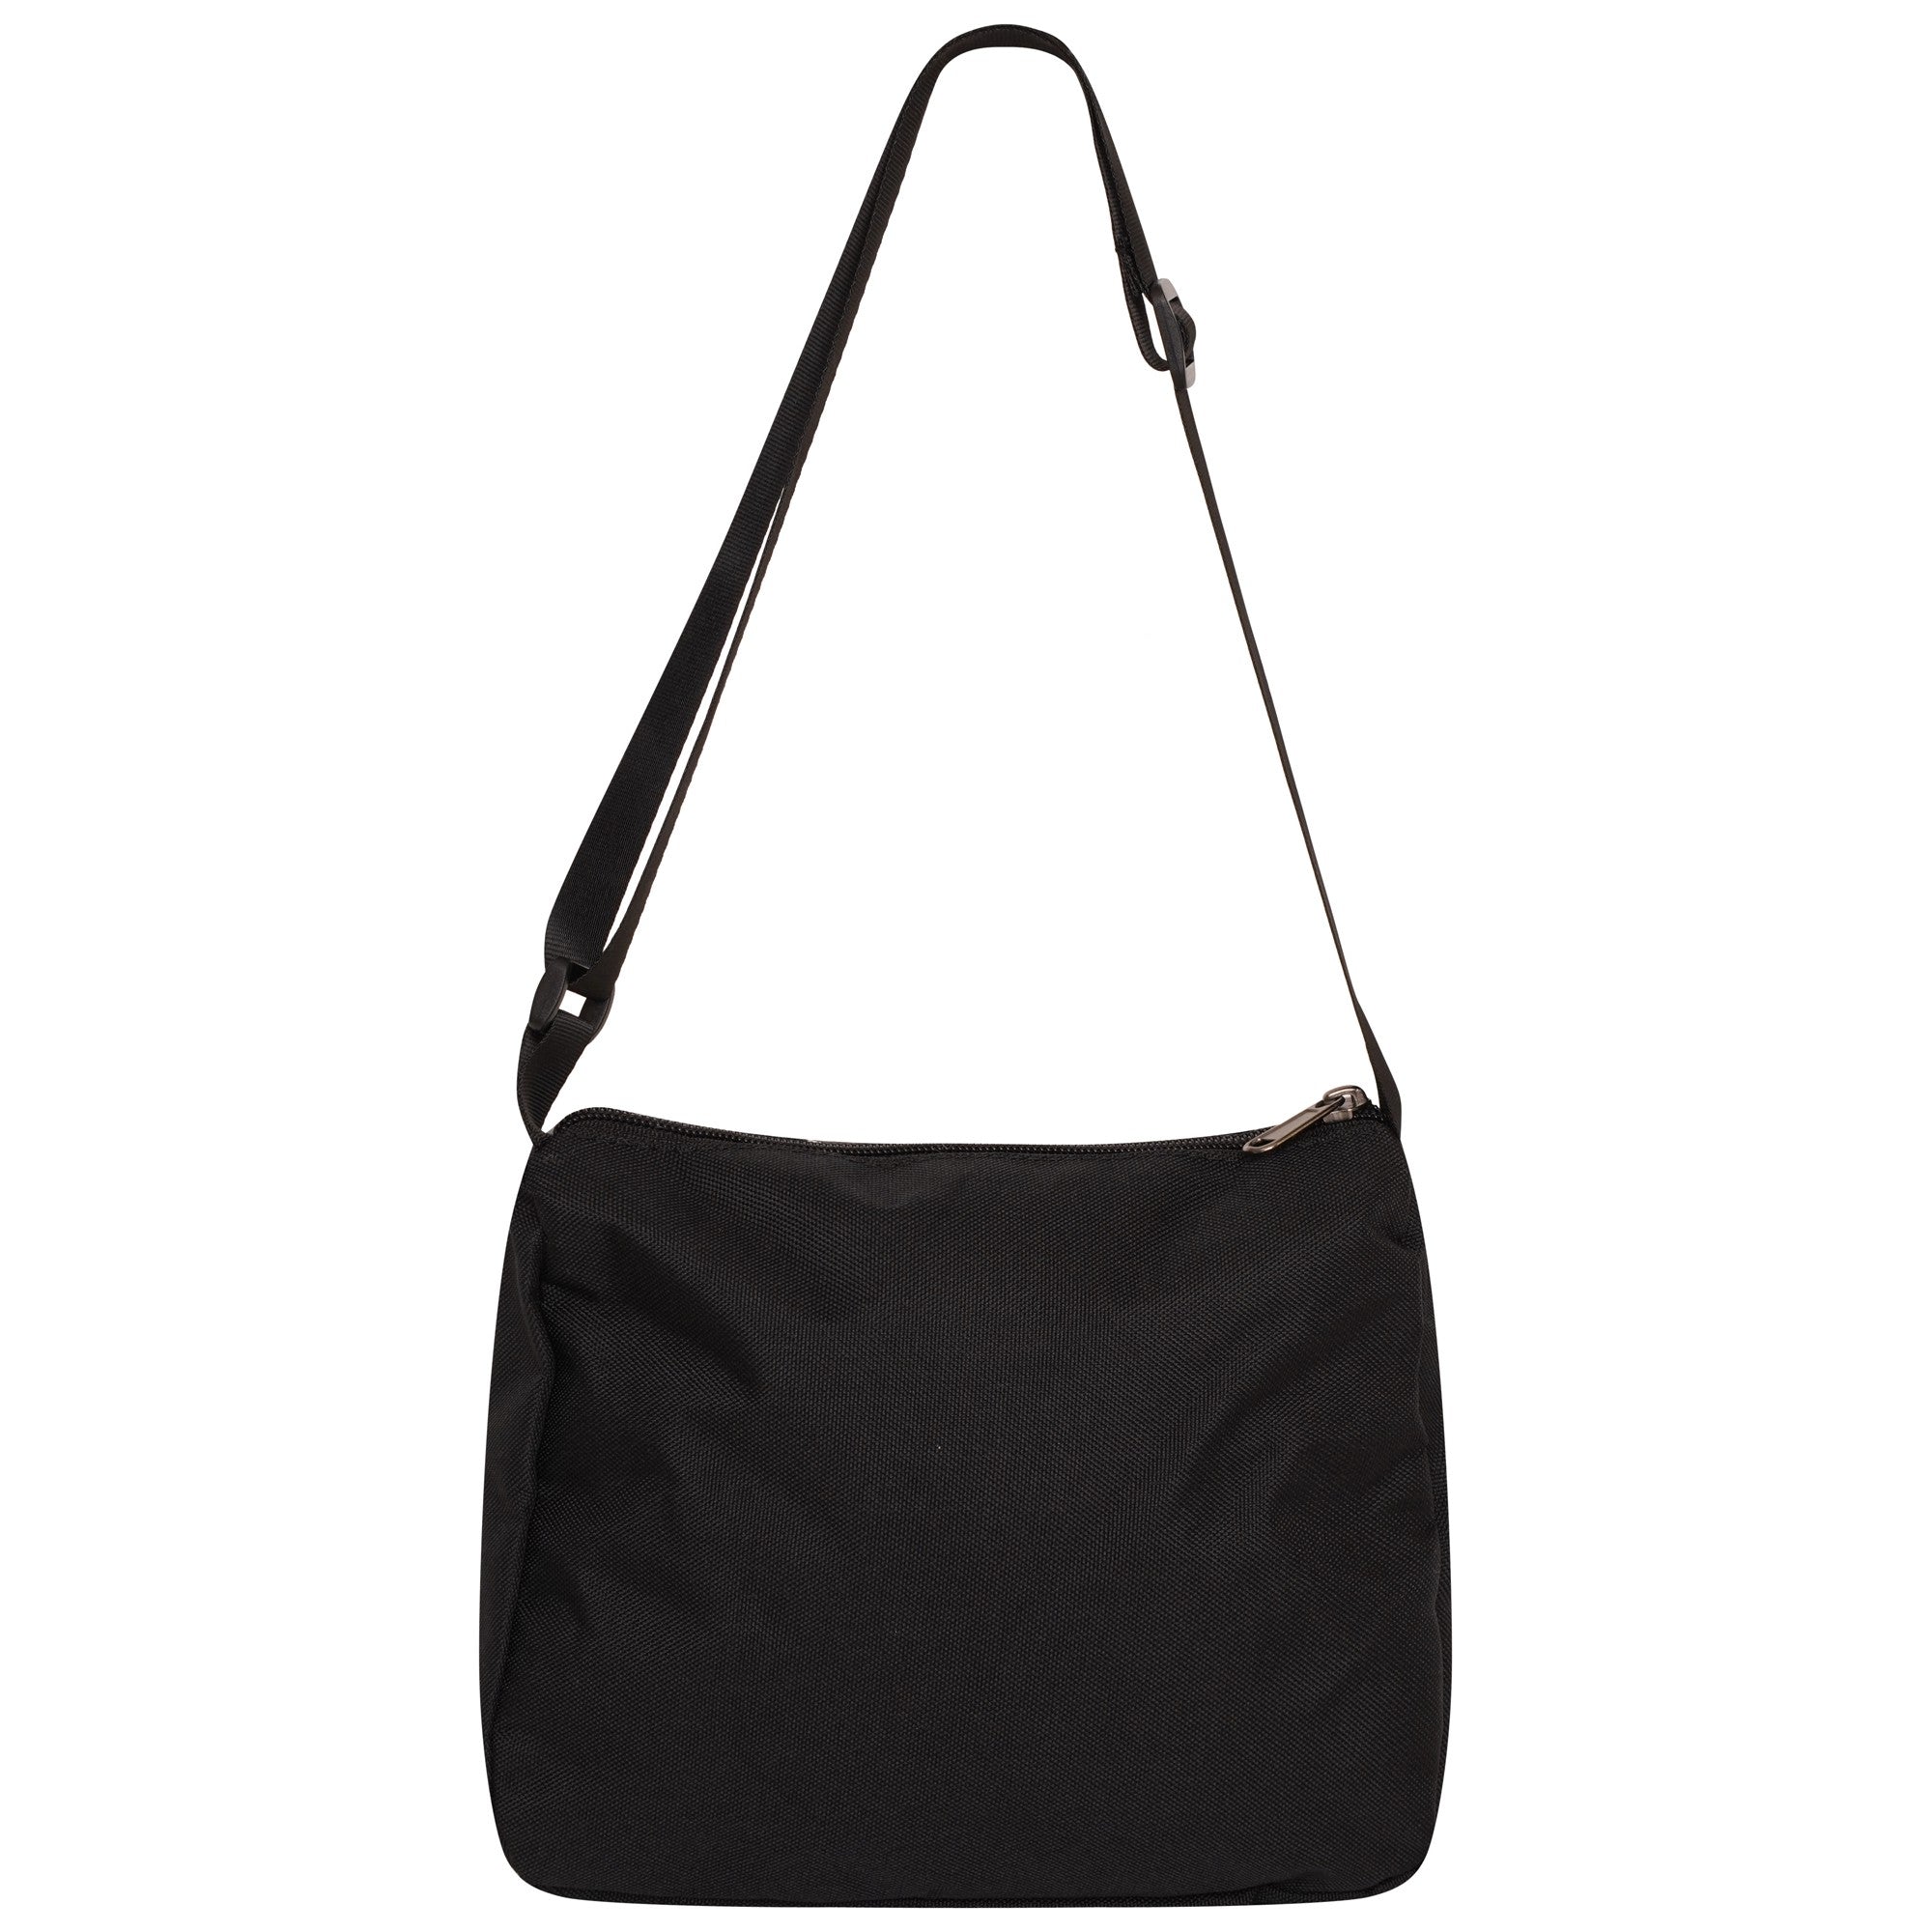 Ro Rox Small Handbag Makeup Cute Purse, Black, Symbols